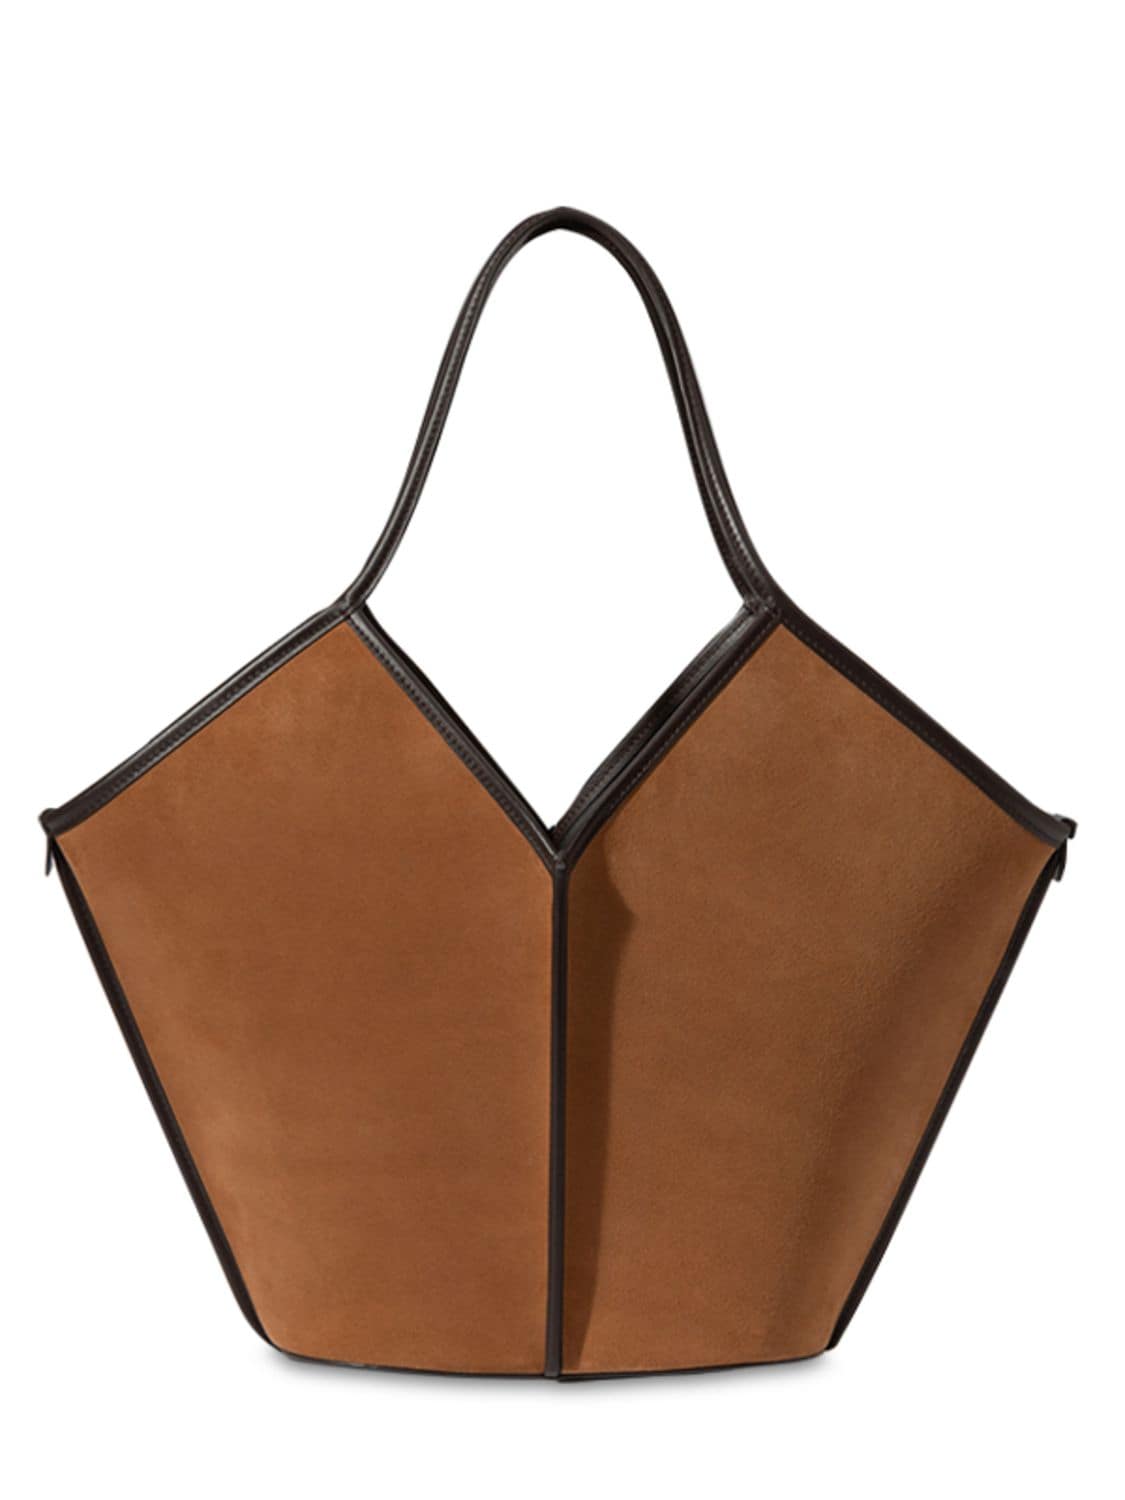 Image of Calella Suede Leather Shoulder Bag